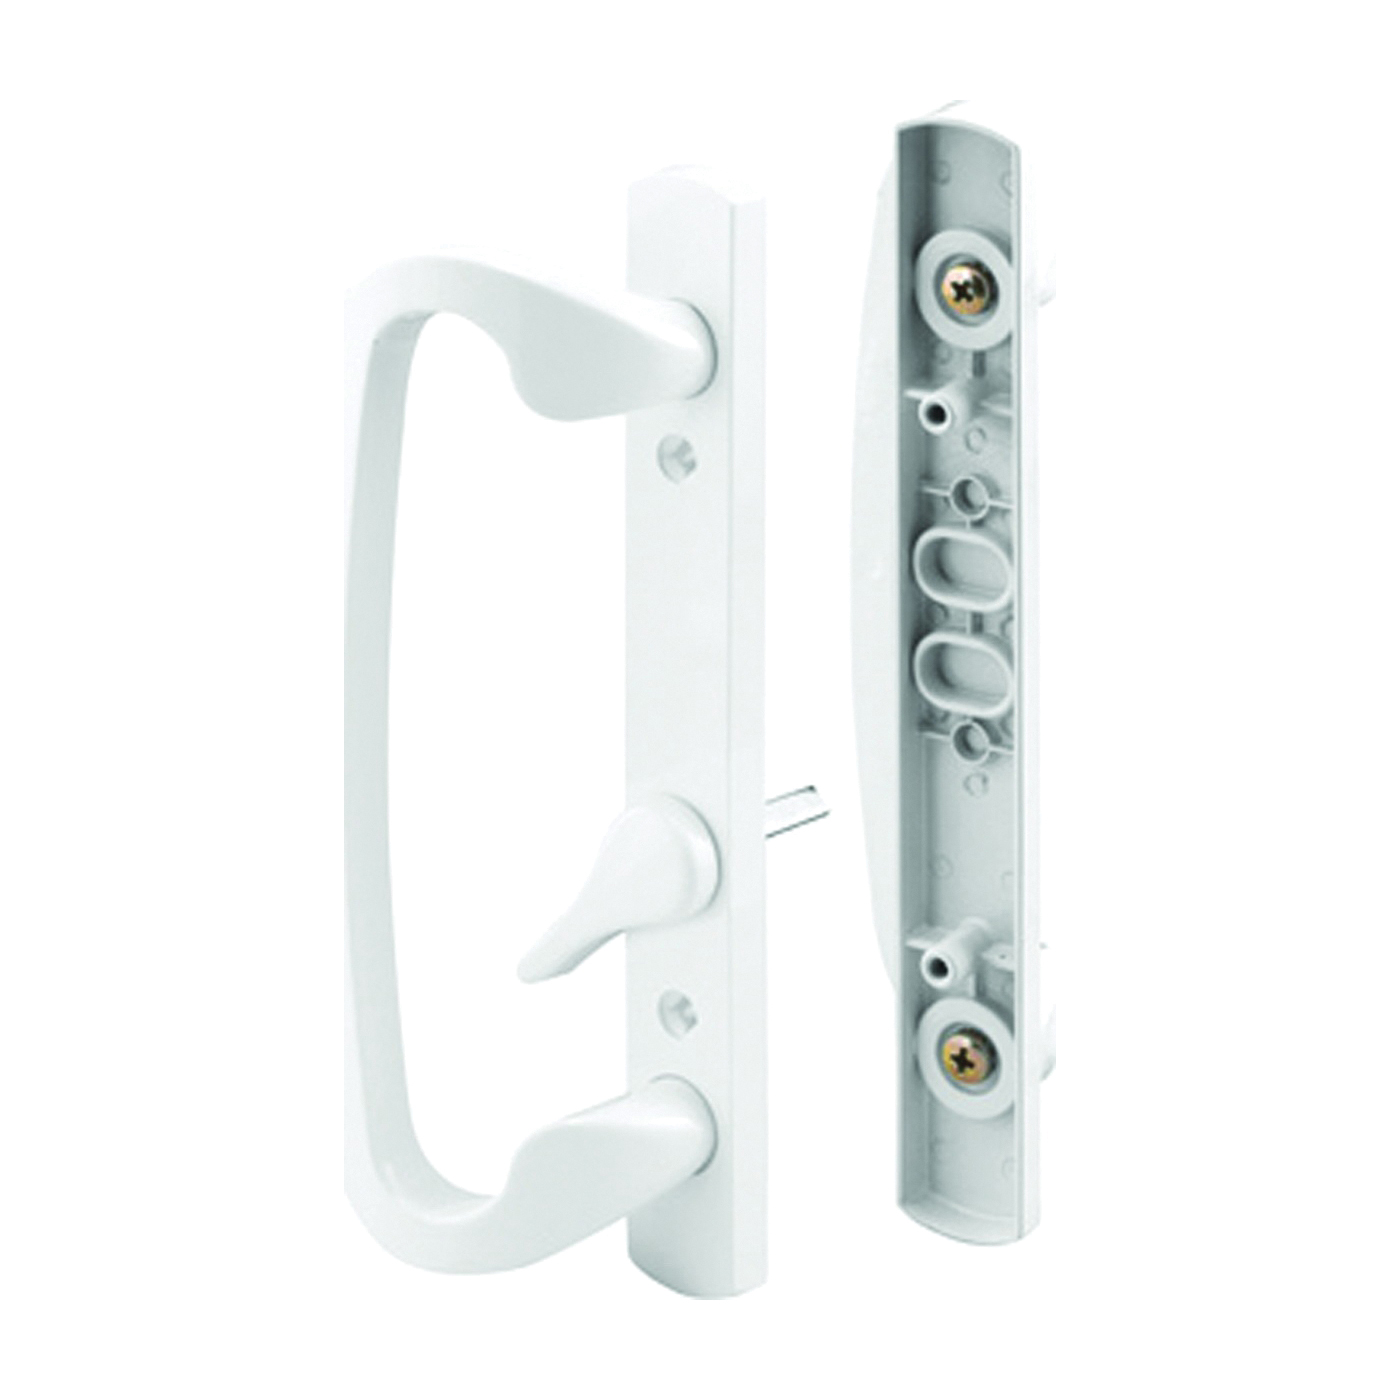 C 1280 Handleset, Aluminum, White, For: 1-5/8 to 1-7/8 in THK Glass Sliding Doors